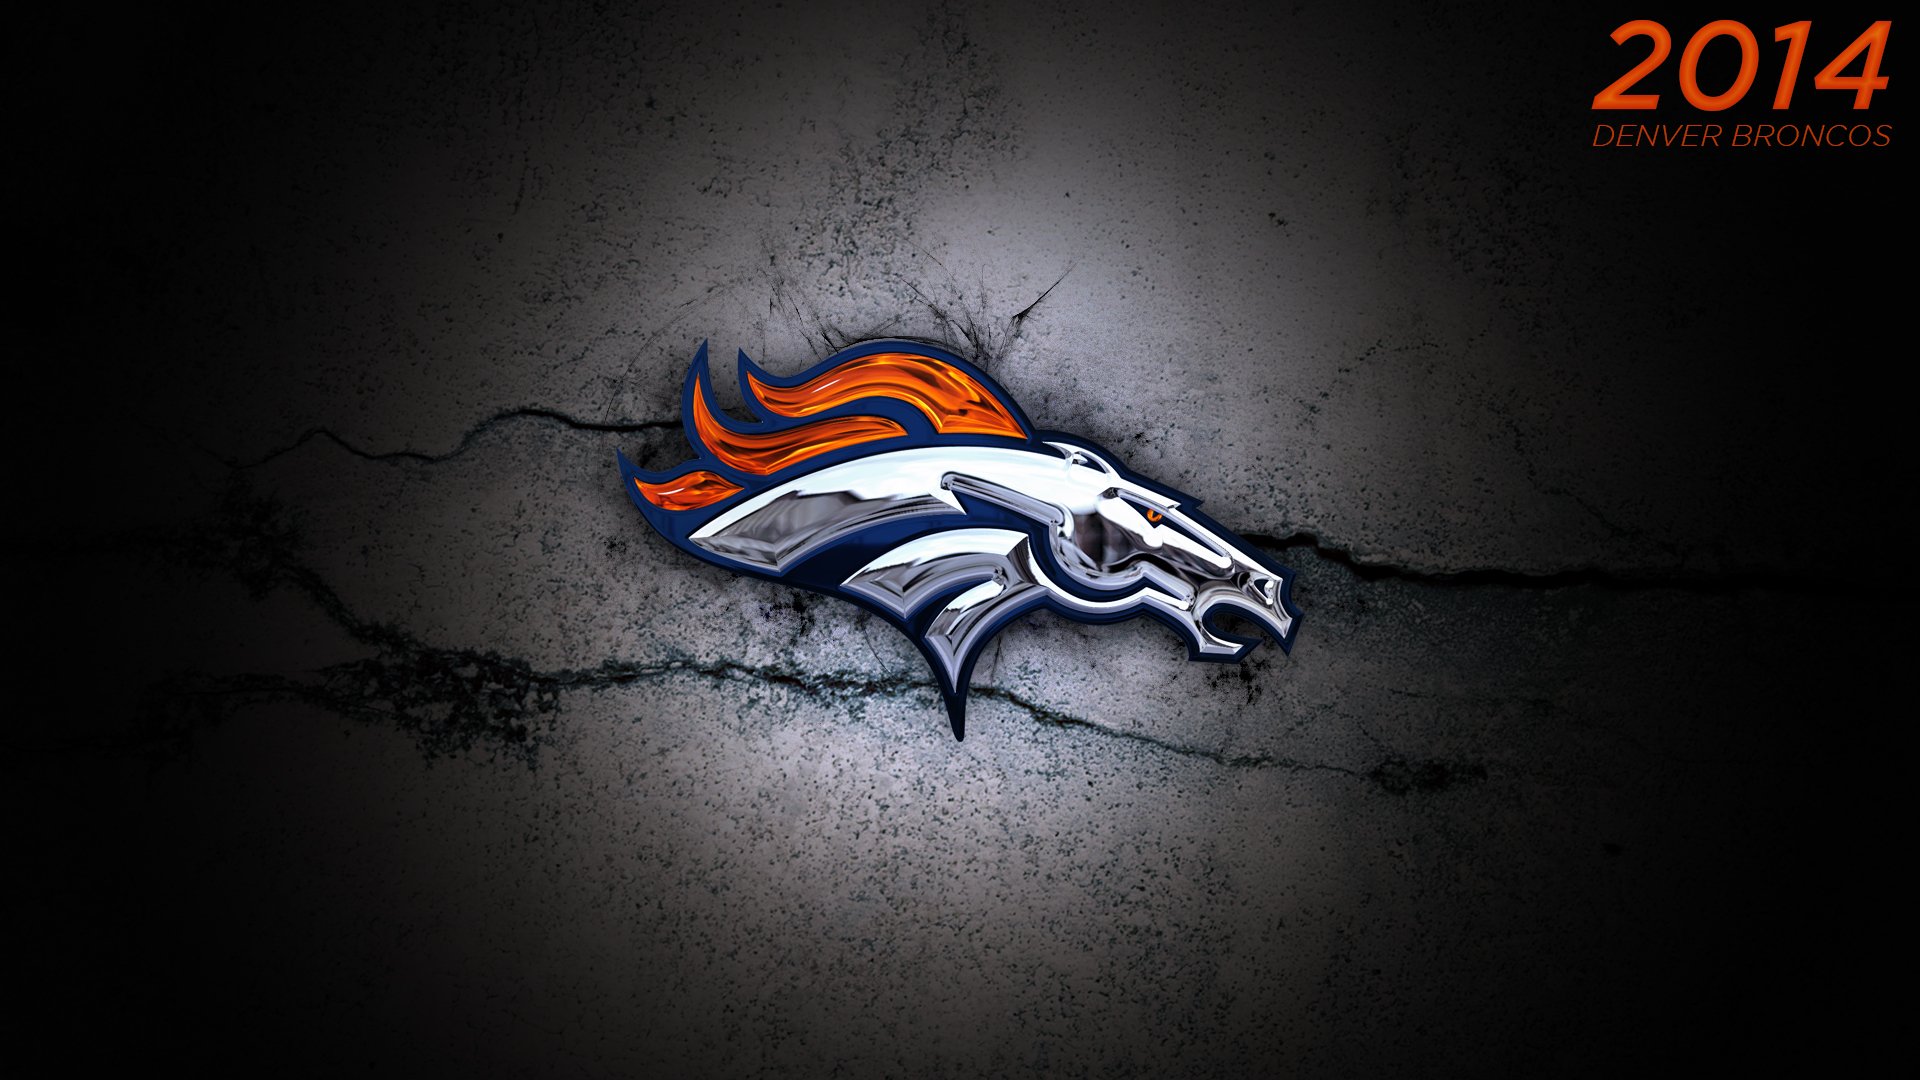  Denver Broncos Wallpaper by DenverSportsWalls on